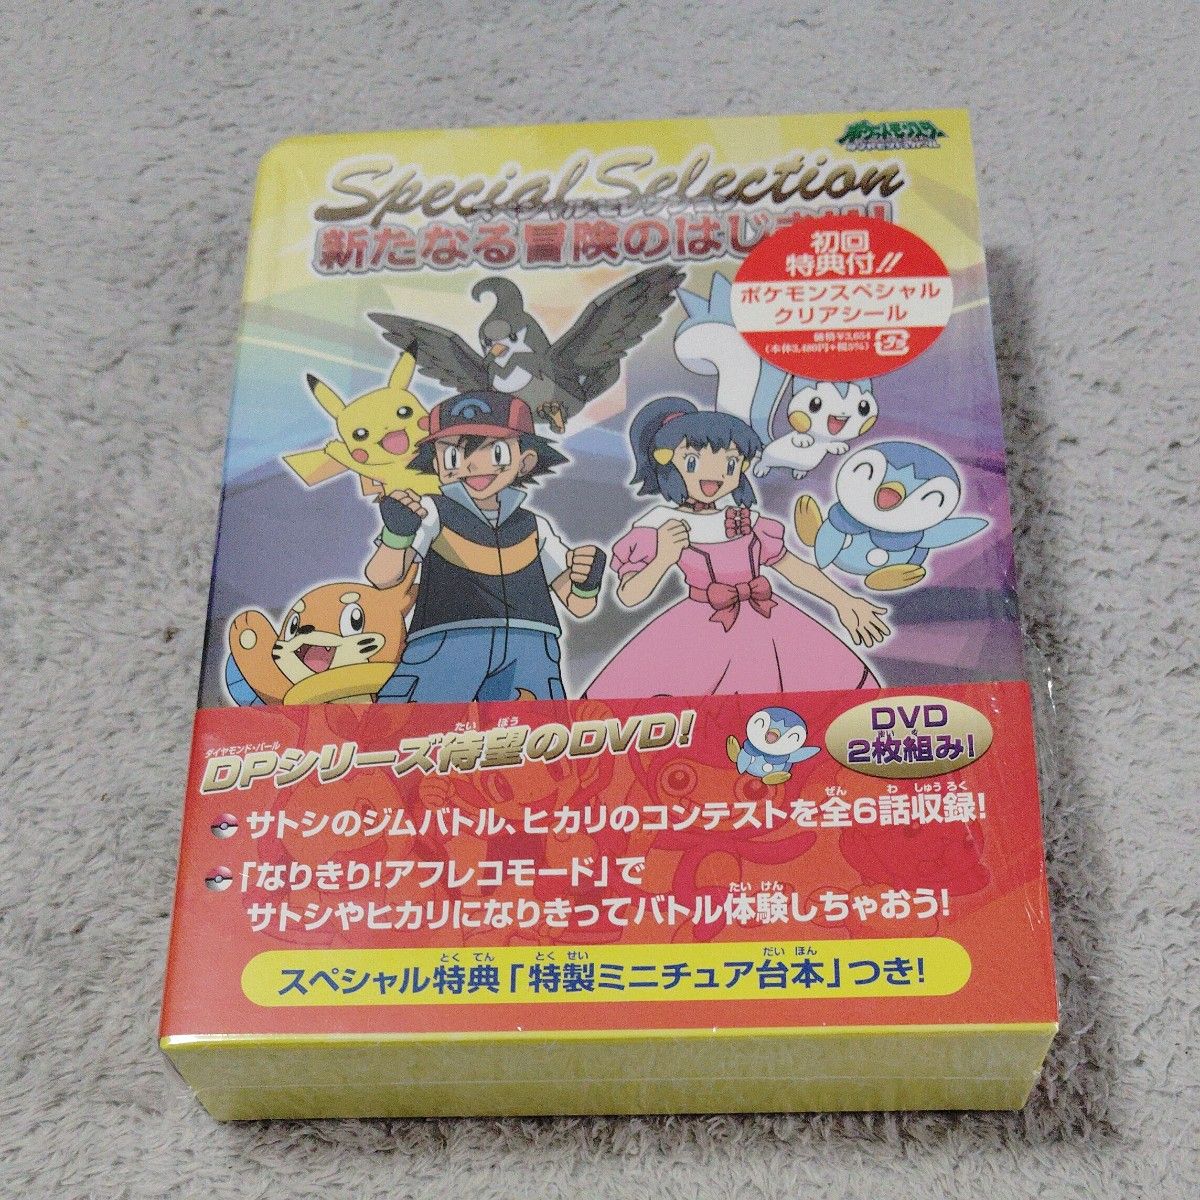 ポケットモンスター ダイヤモンドパール スペシャルセレクション 新たなる冒険のはじまり! [DVD] DVD